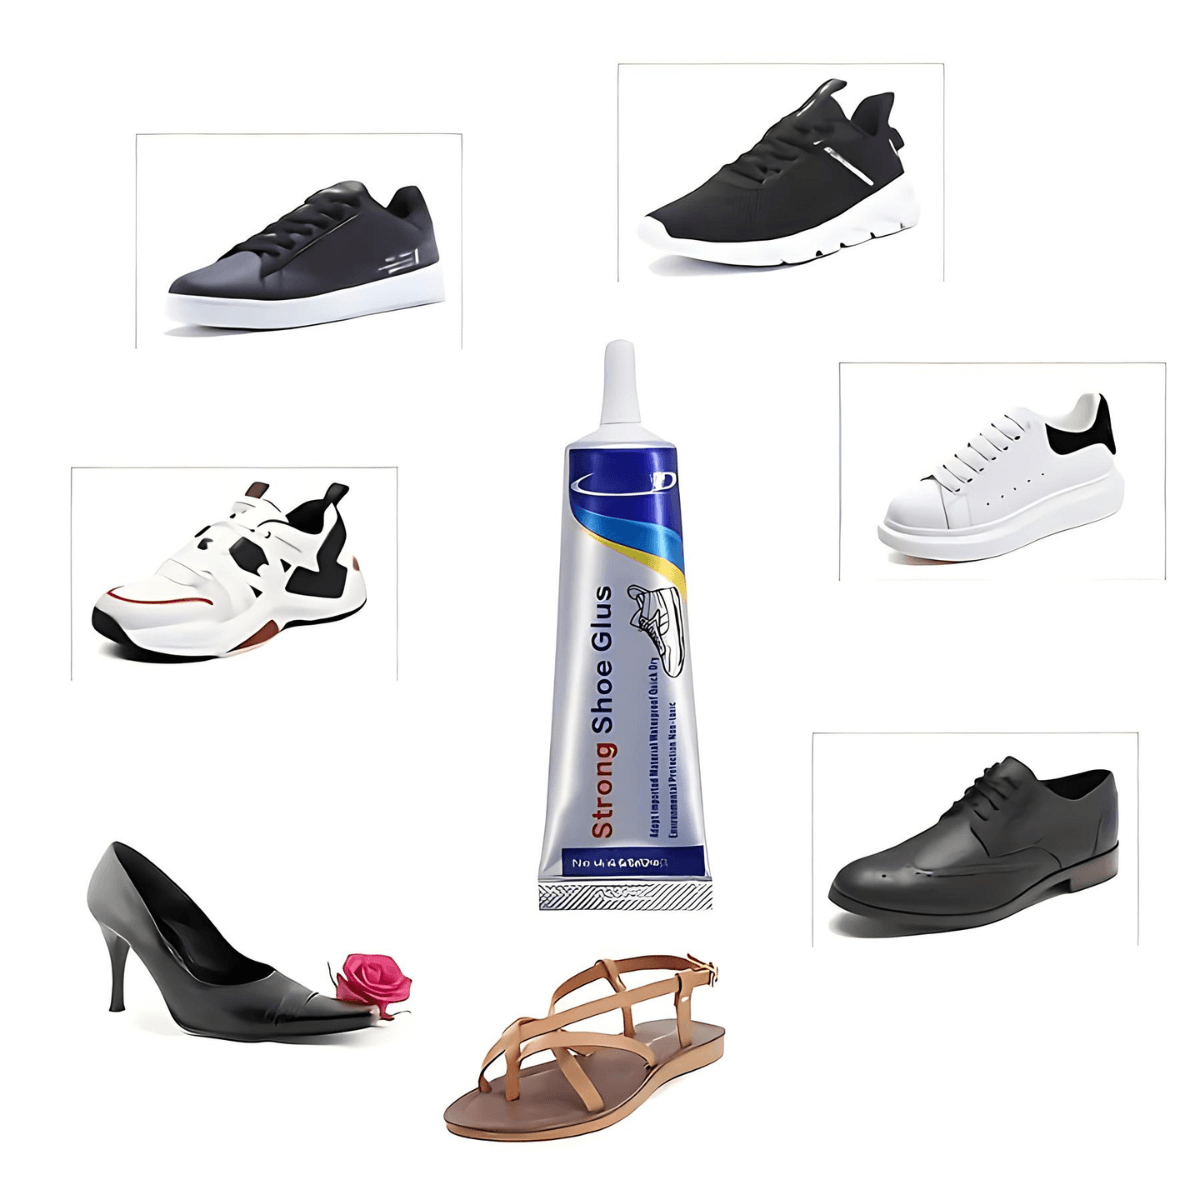 ADHESIVEFLEX Shoe Glue